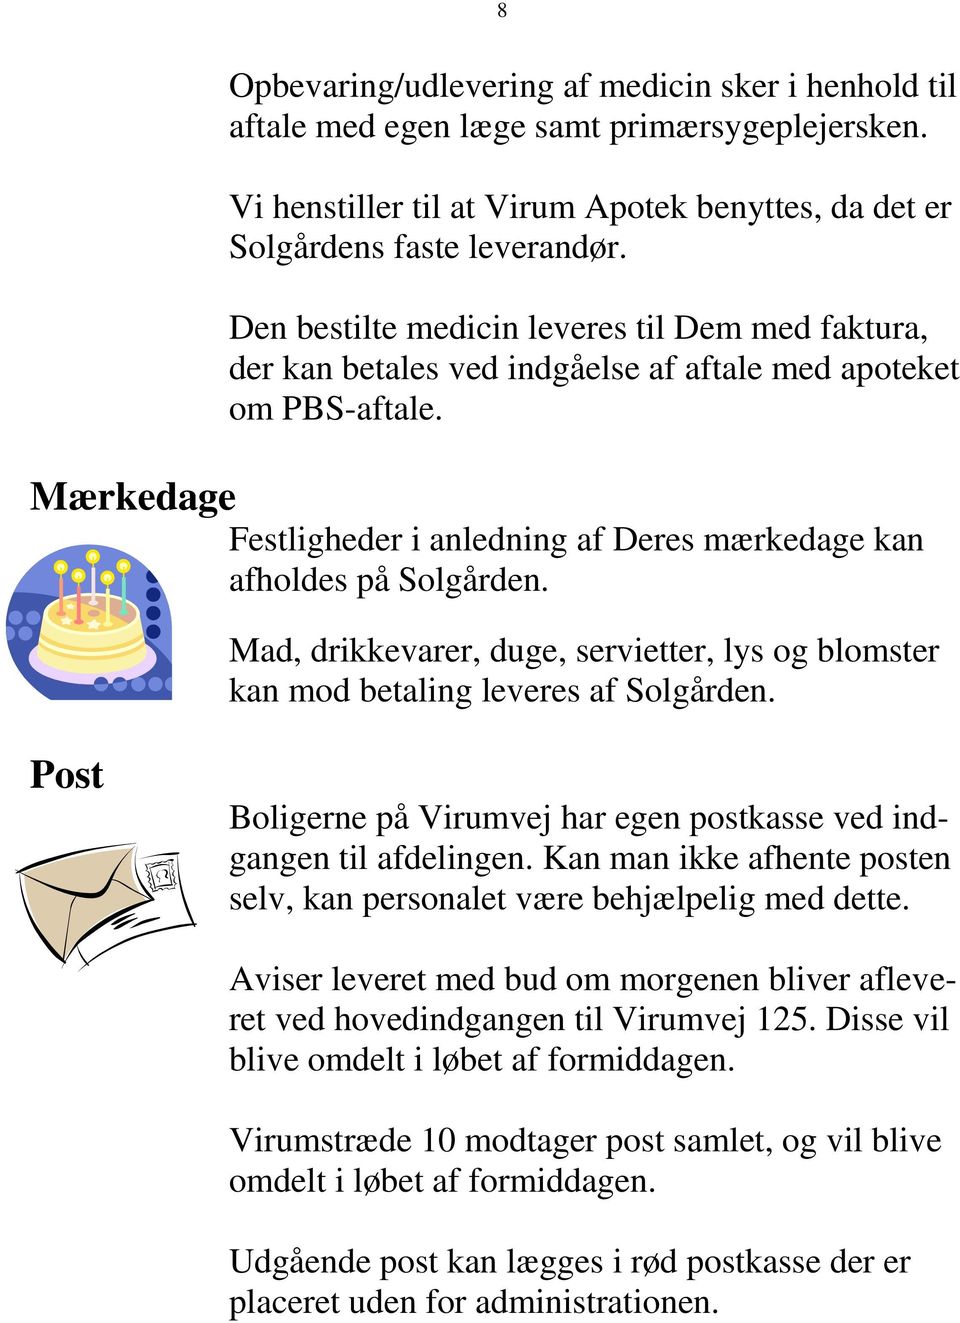 Mad, drikkevarer, duge, servietter, lys og blomster kan mod betaling leveres af Solgården. Post Boligerne på Virumvej har egen postkasse ved indgangen til afdelingen.